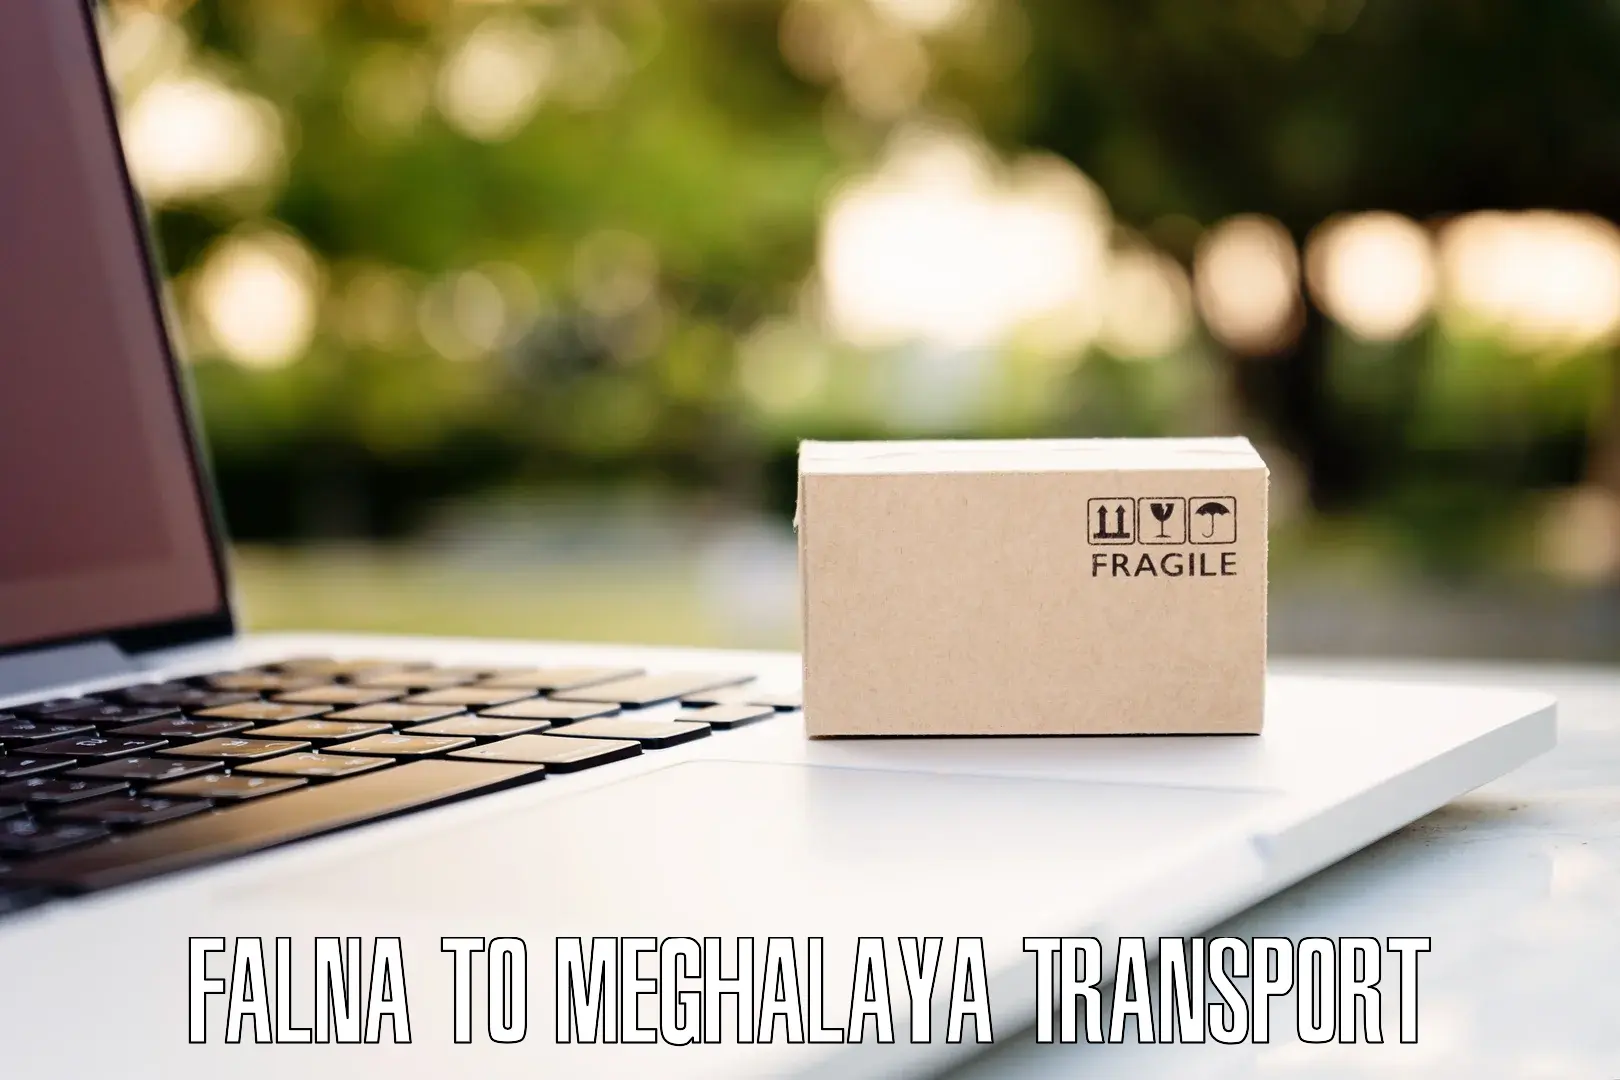 Land transport services Falna to Meghalaya